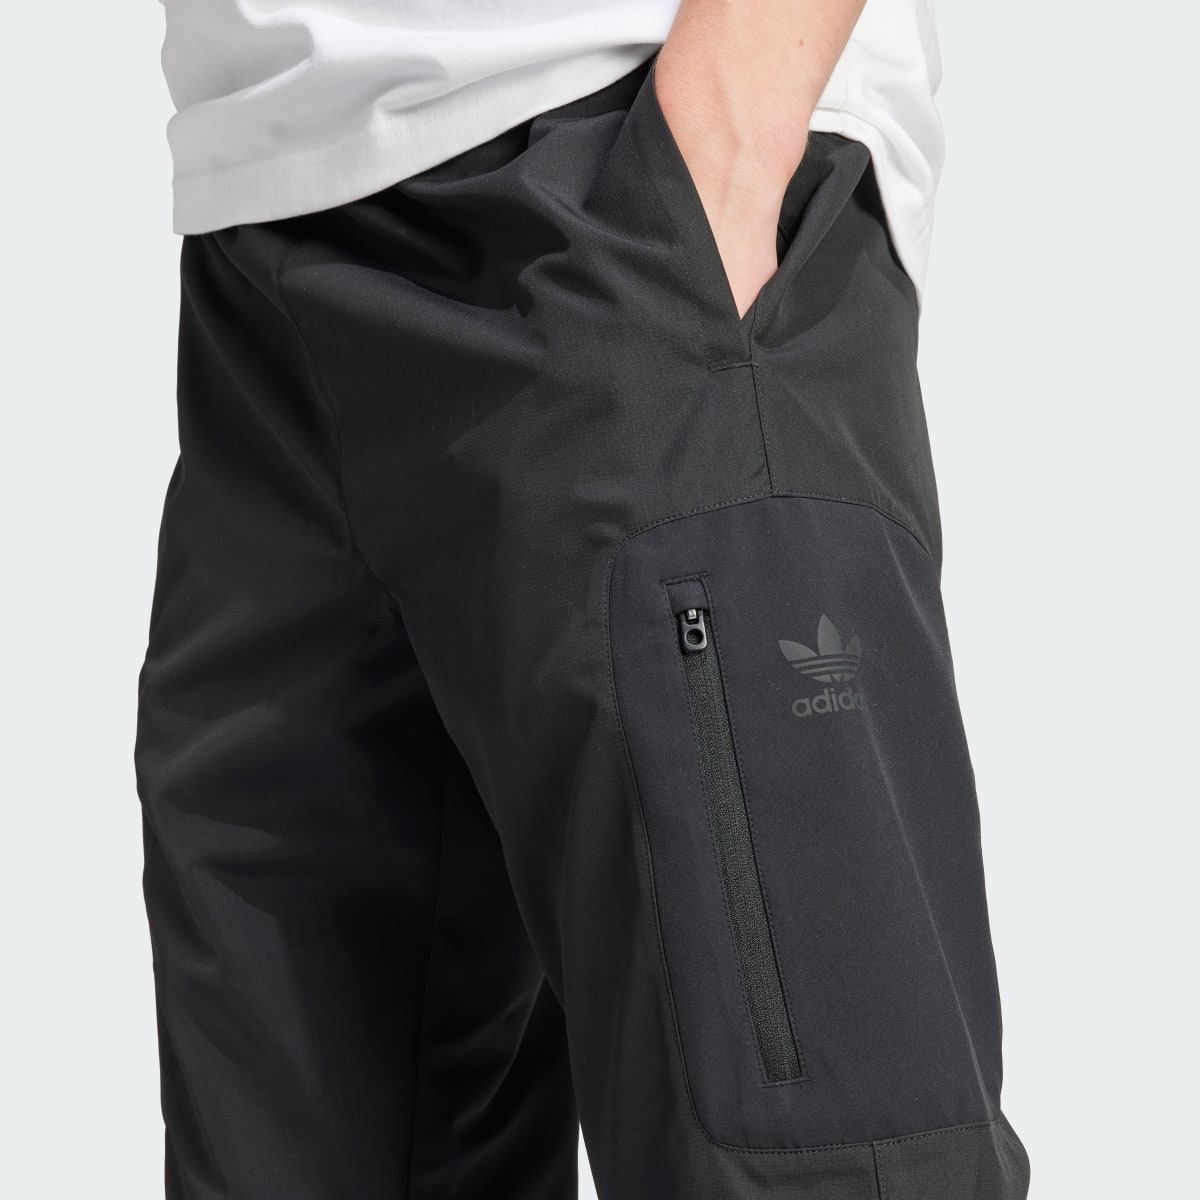 Adidas Utility Cargo Pantolon. 5